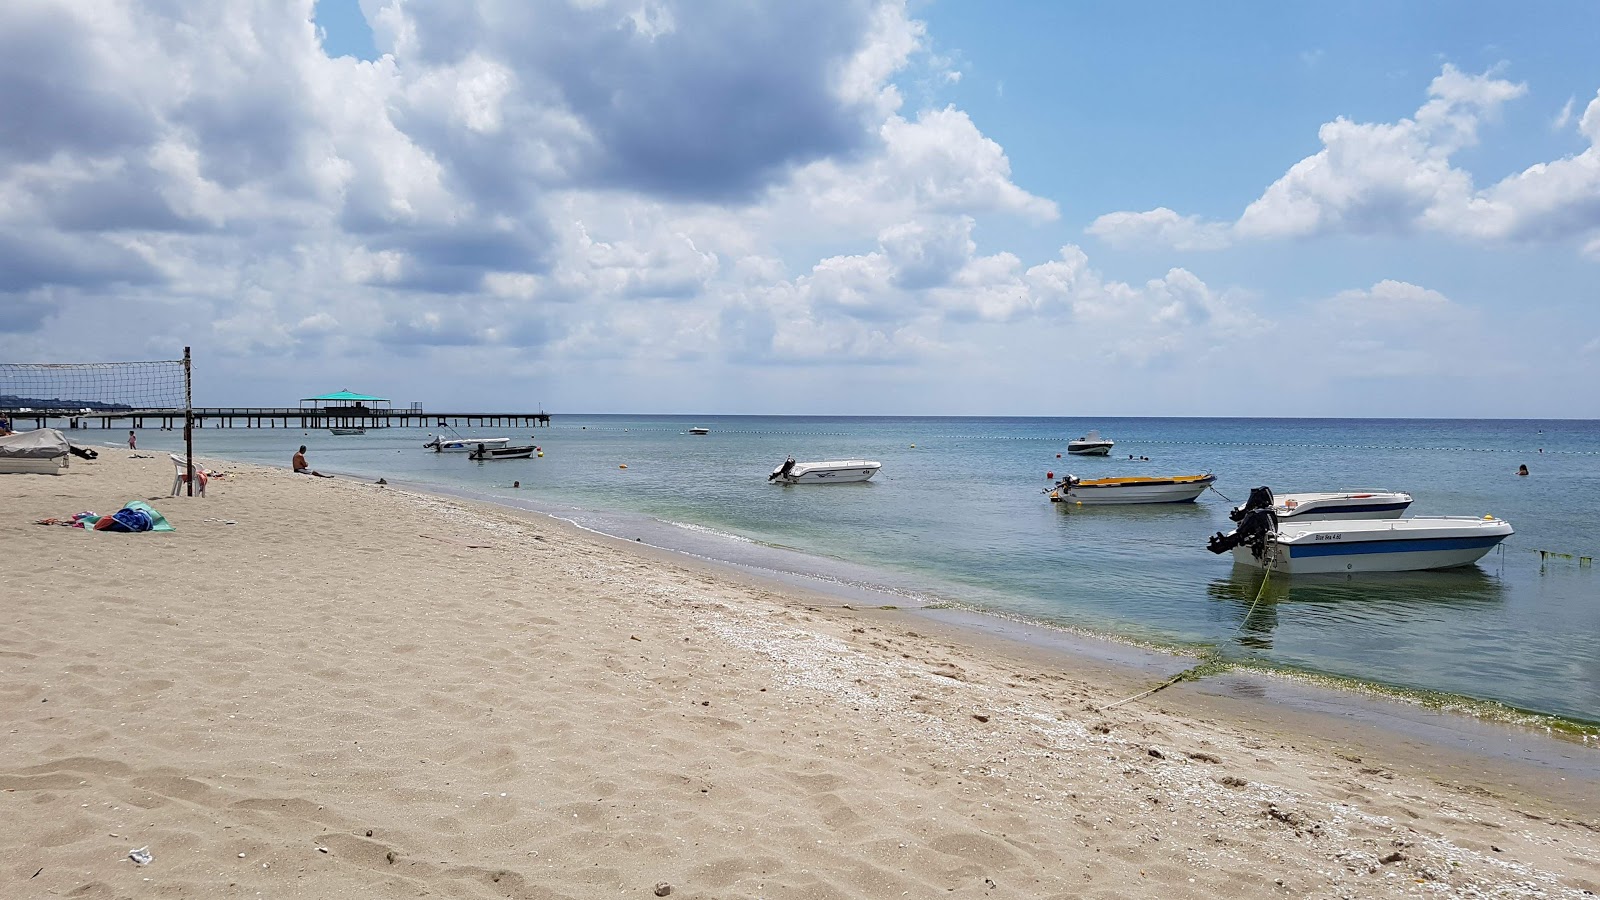 Kamiloba beach'in fotoğrafı kahverengi kum yüzey ile